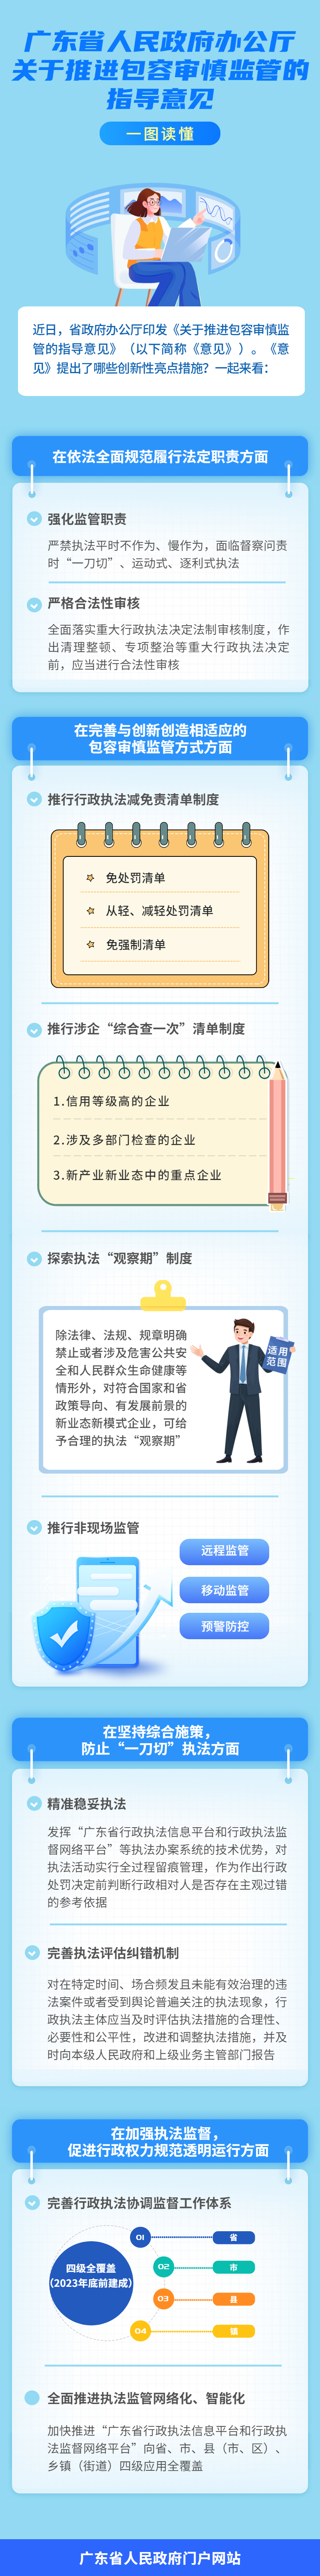 一图读懂广东省人民政府办公厅关于推进包容审慎监管的指导意见